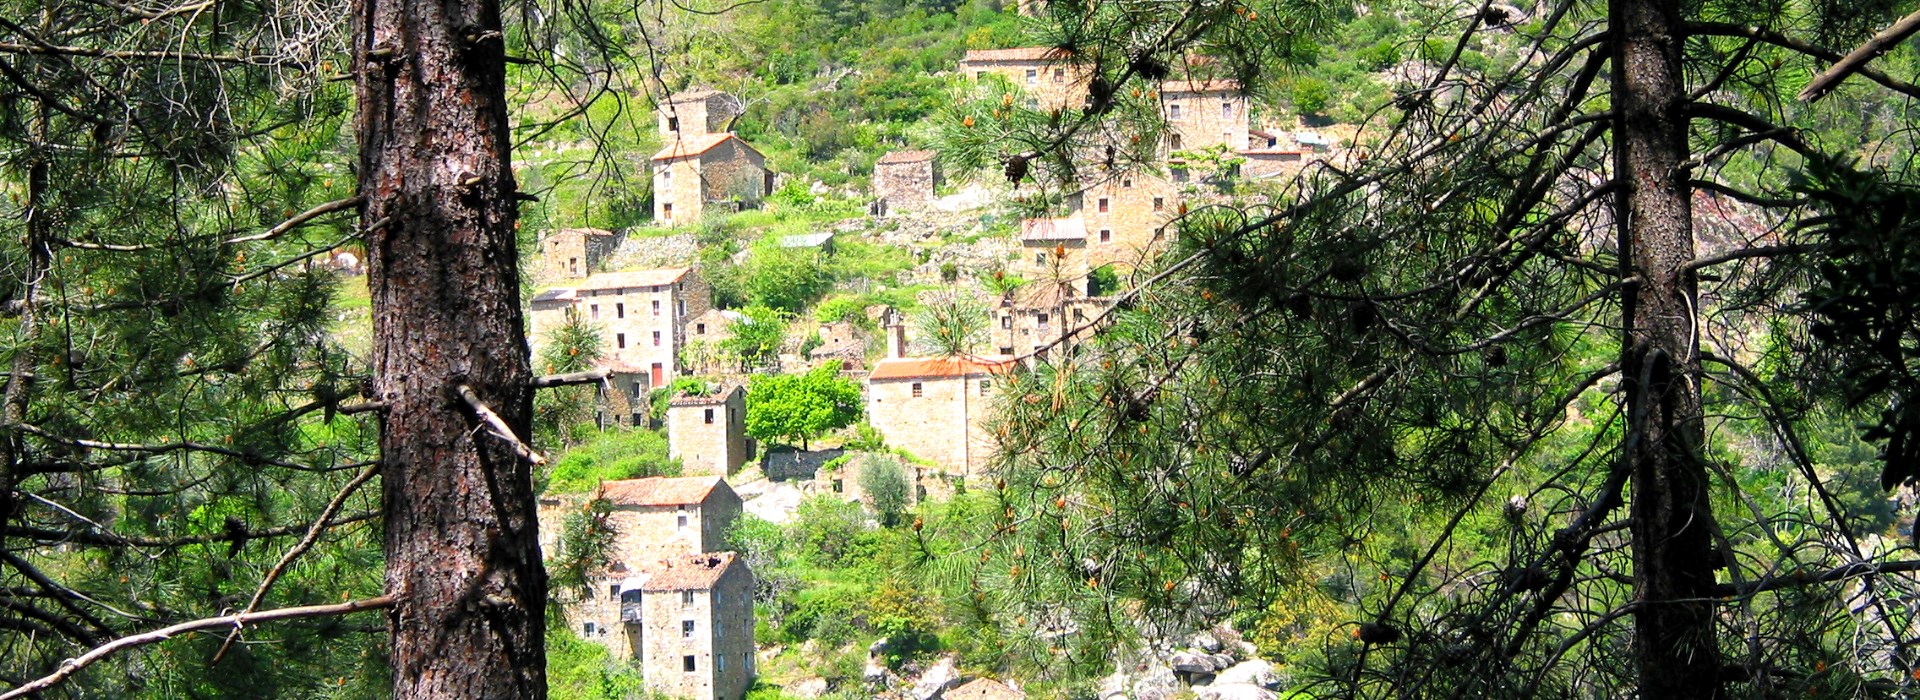 Visiter Muna - Corse